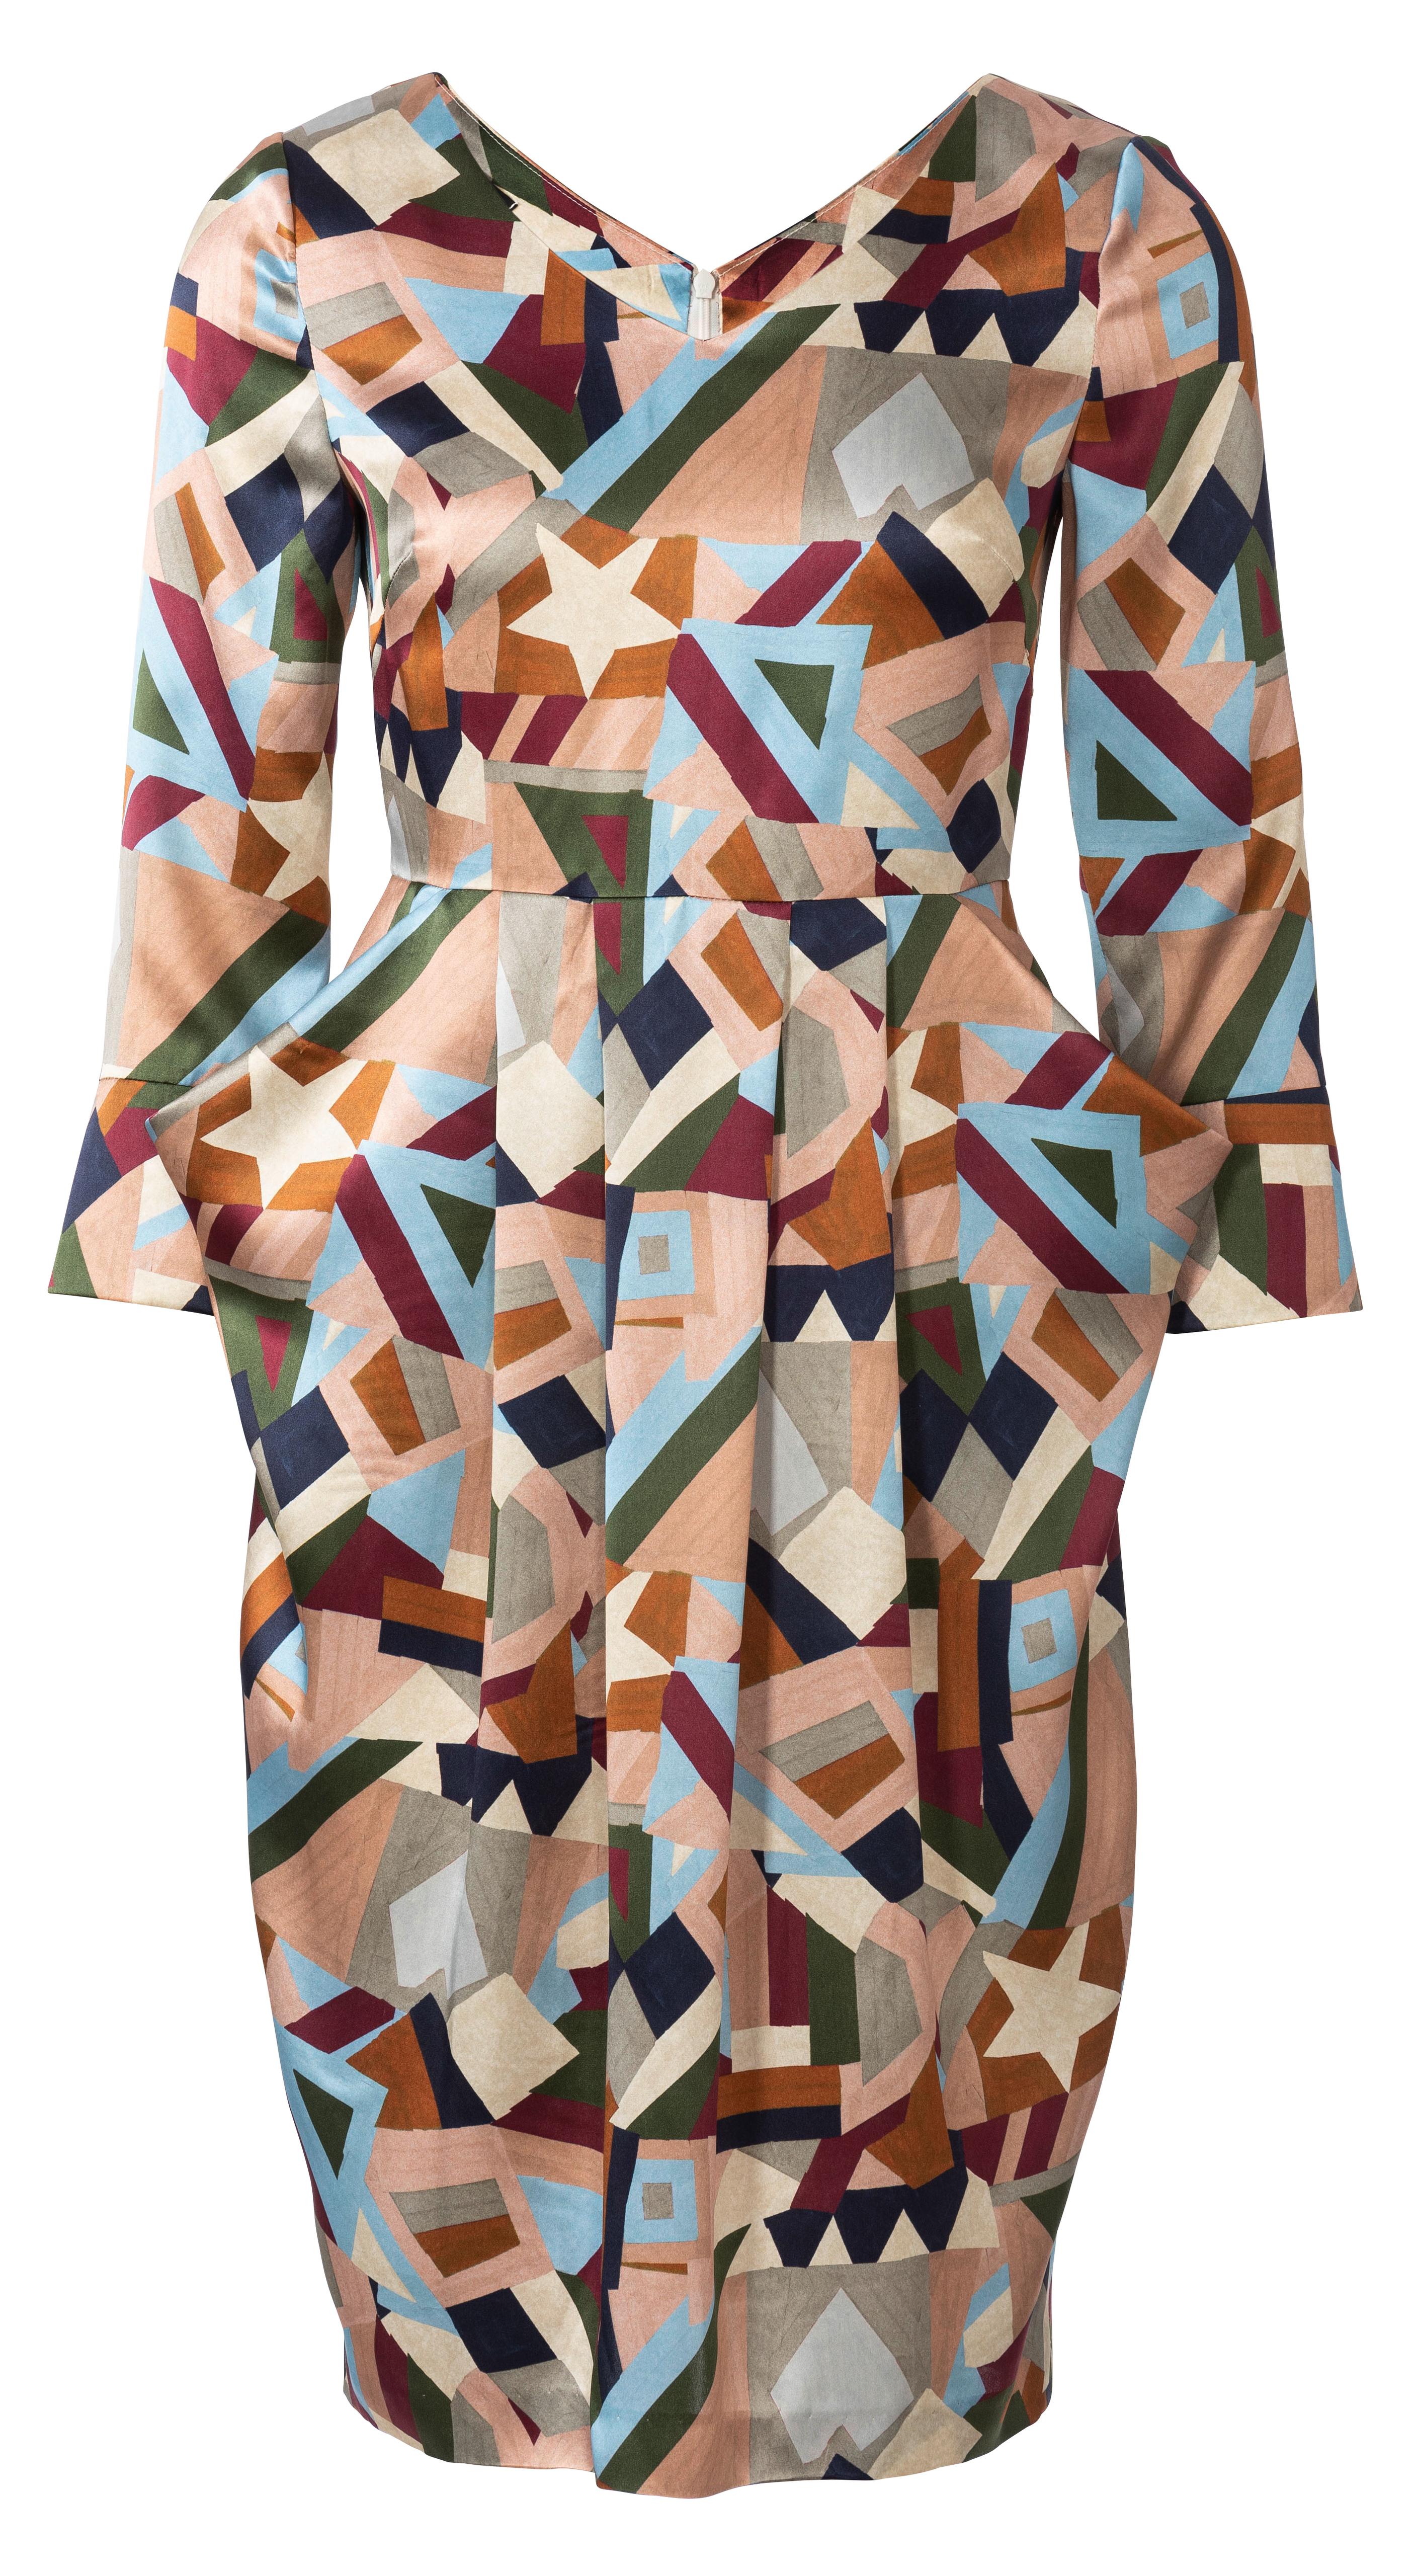 Burda B6224 Dress Sewing Pattern